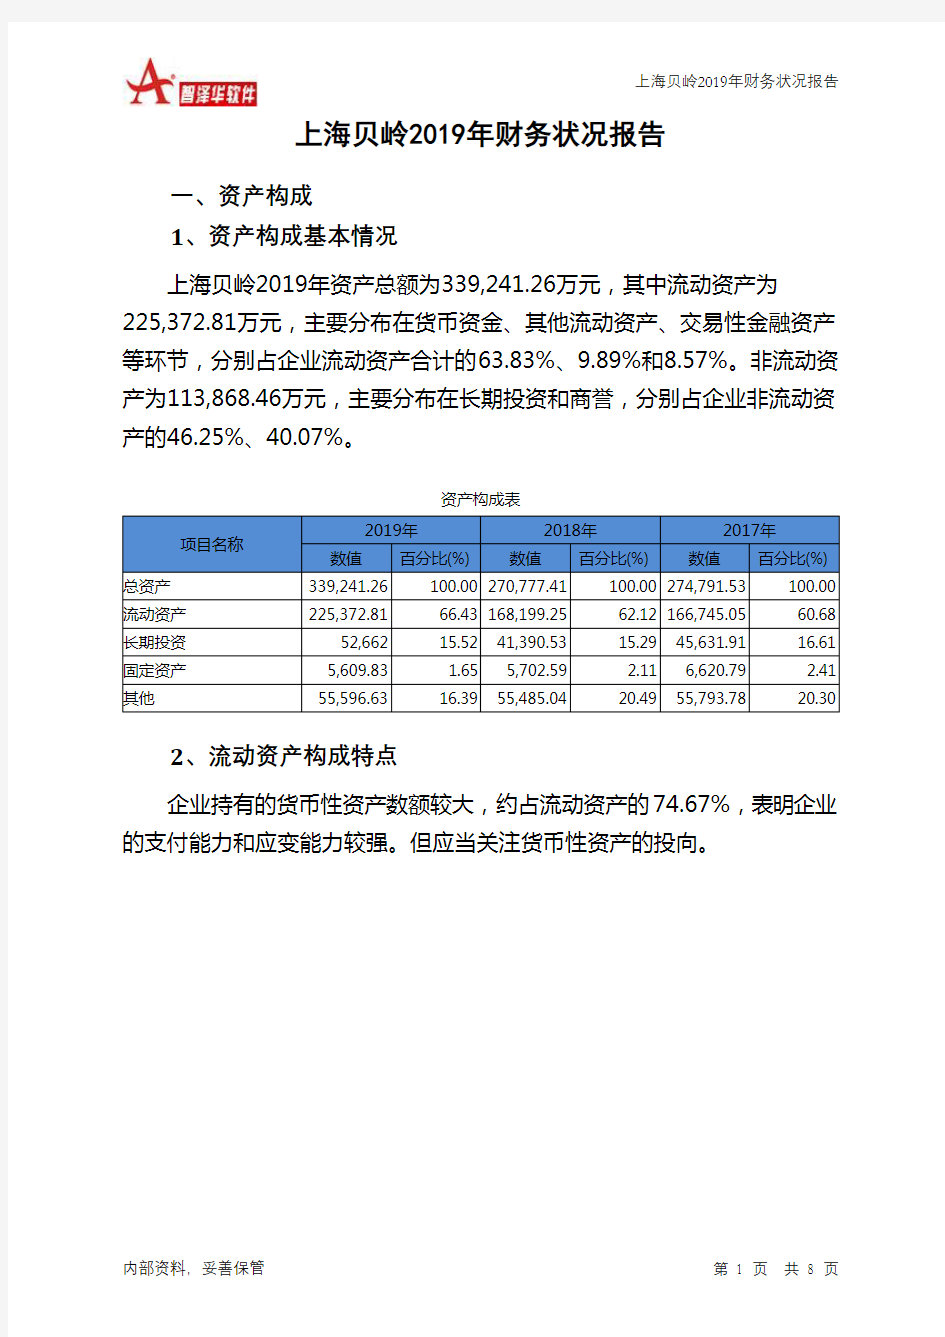 上海贝岭2019年财务状况报告